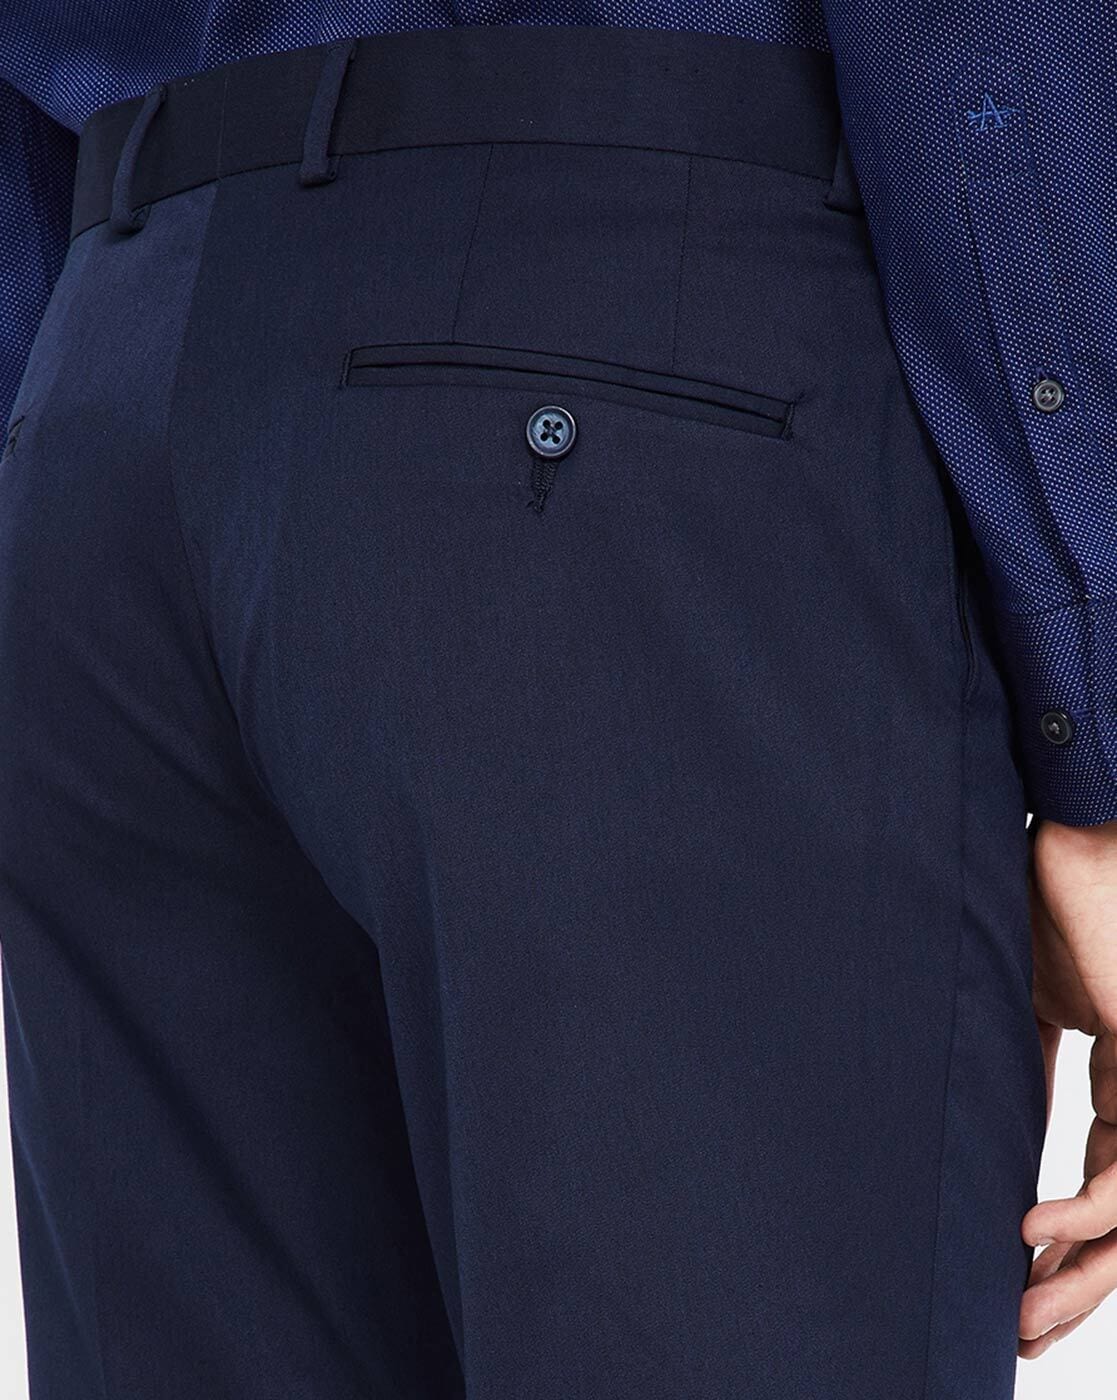 JadeBlue Navy Regular Fit Trousers